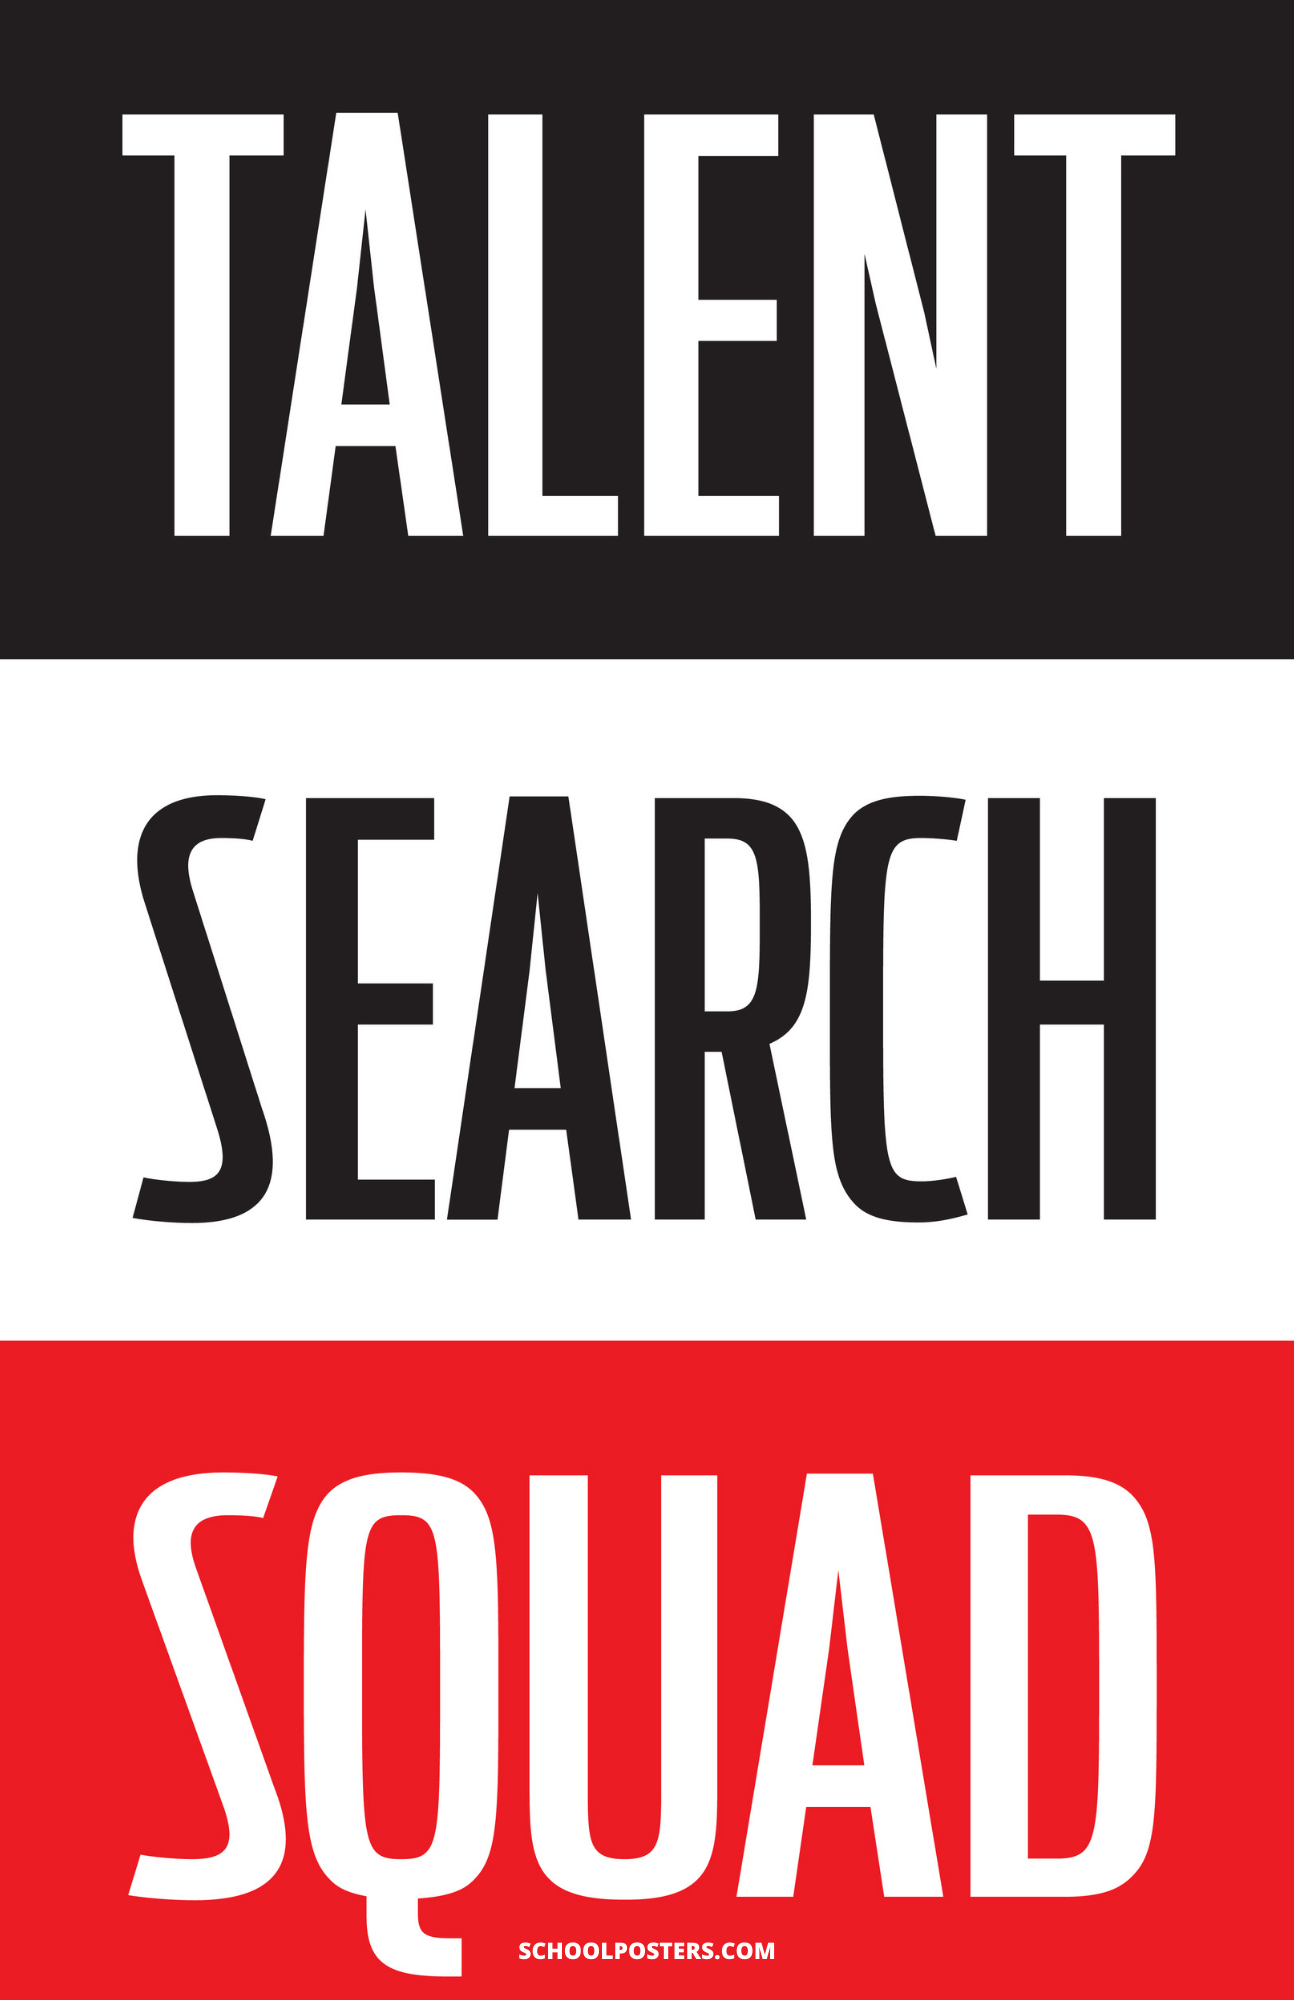 TRIO Talent Search Squad Poster